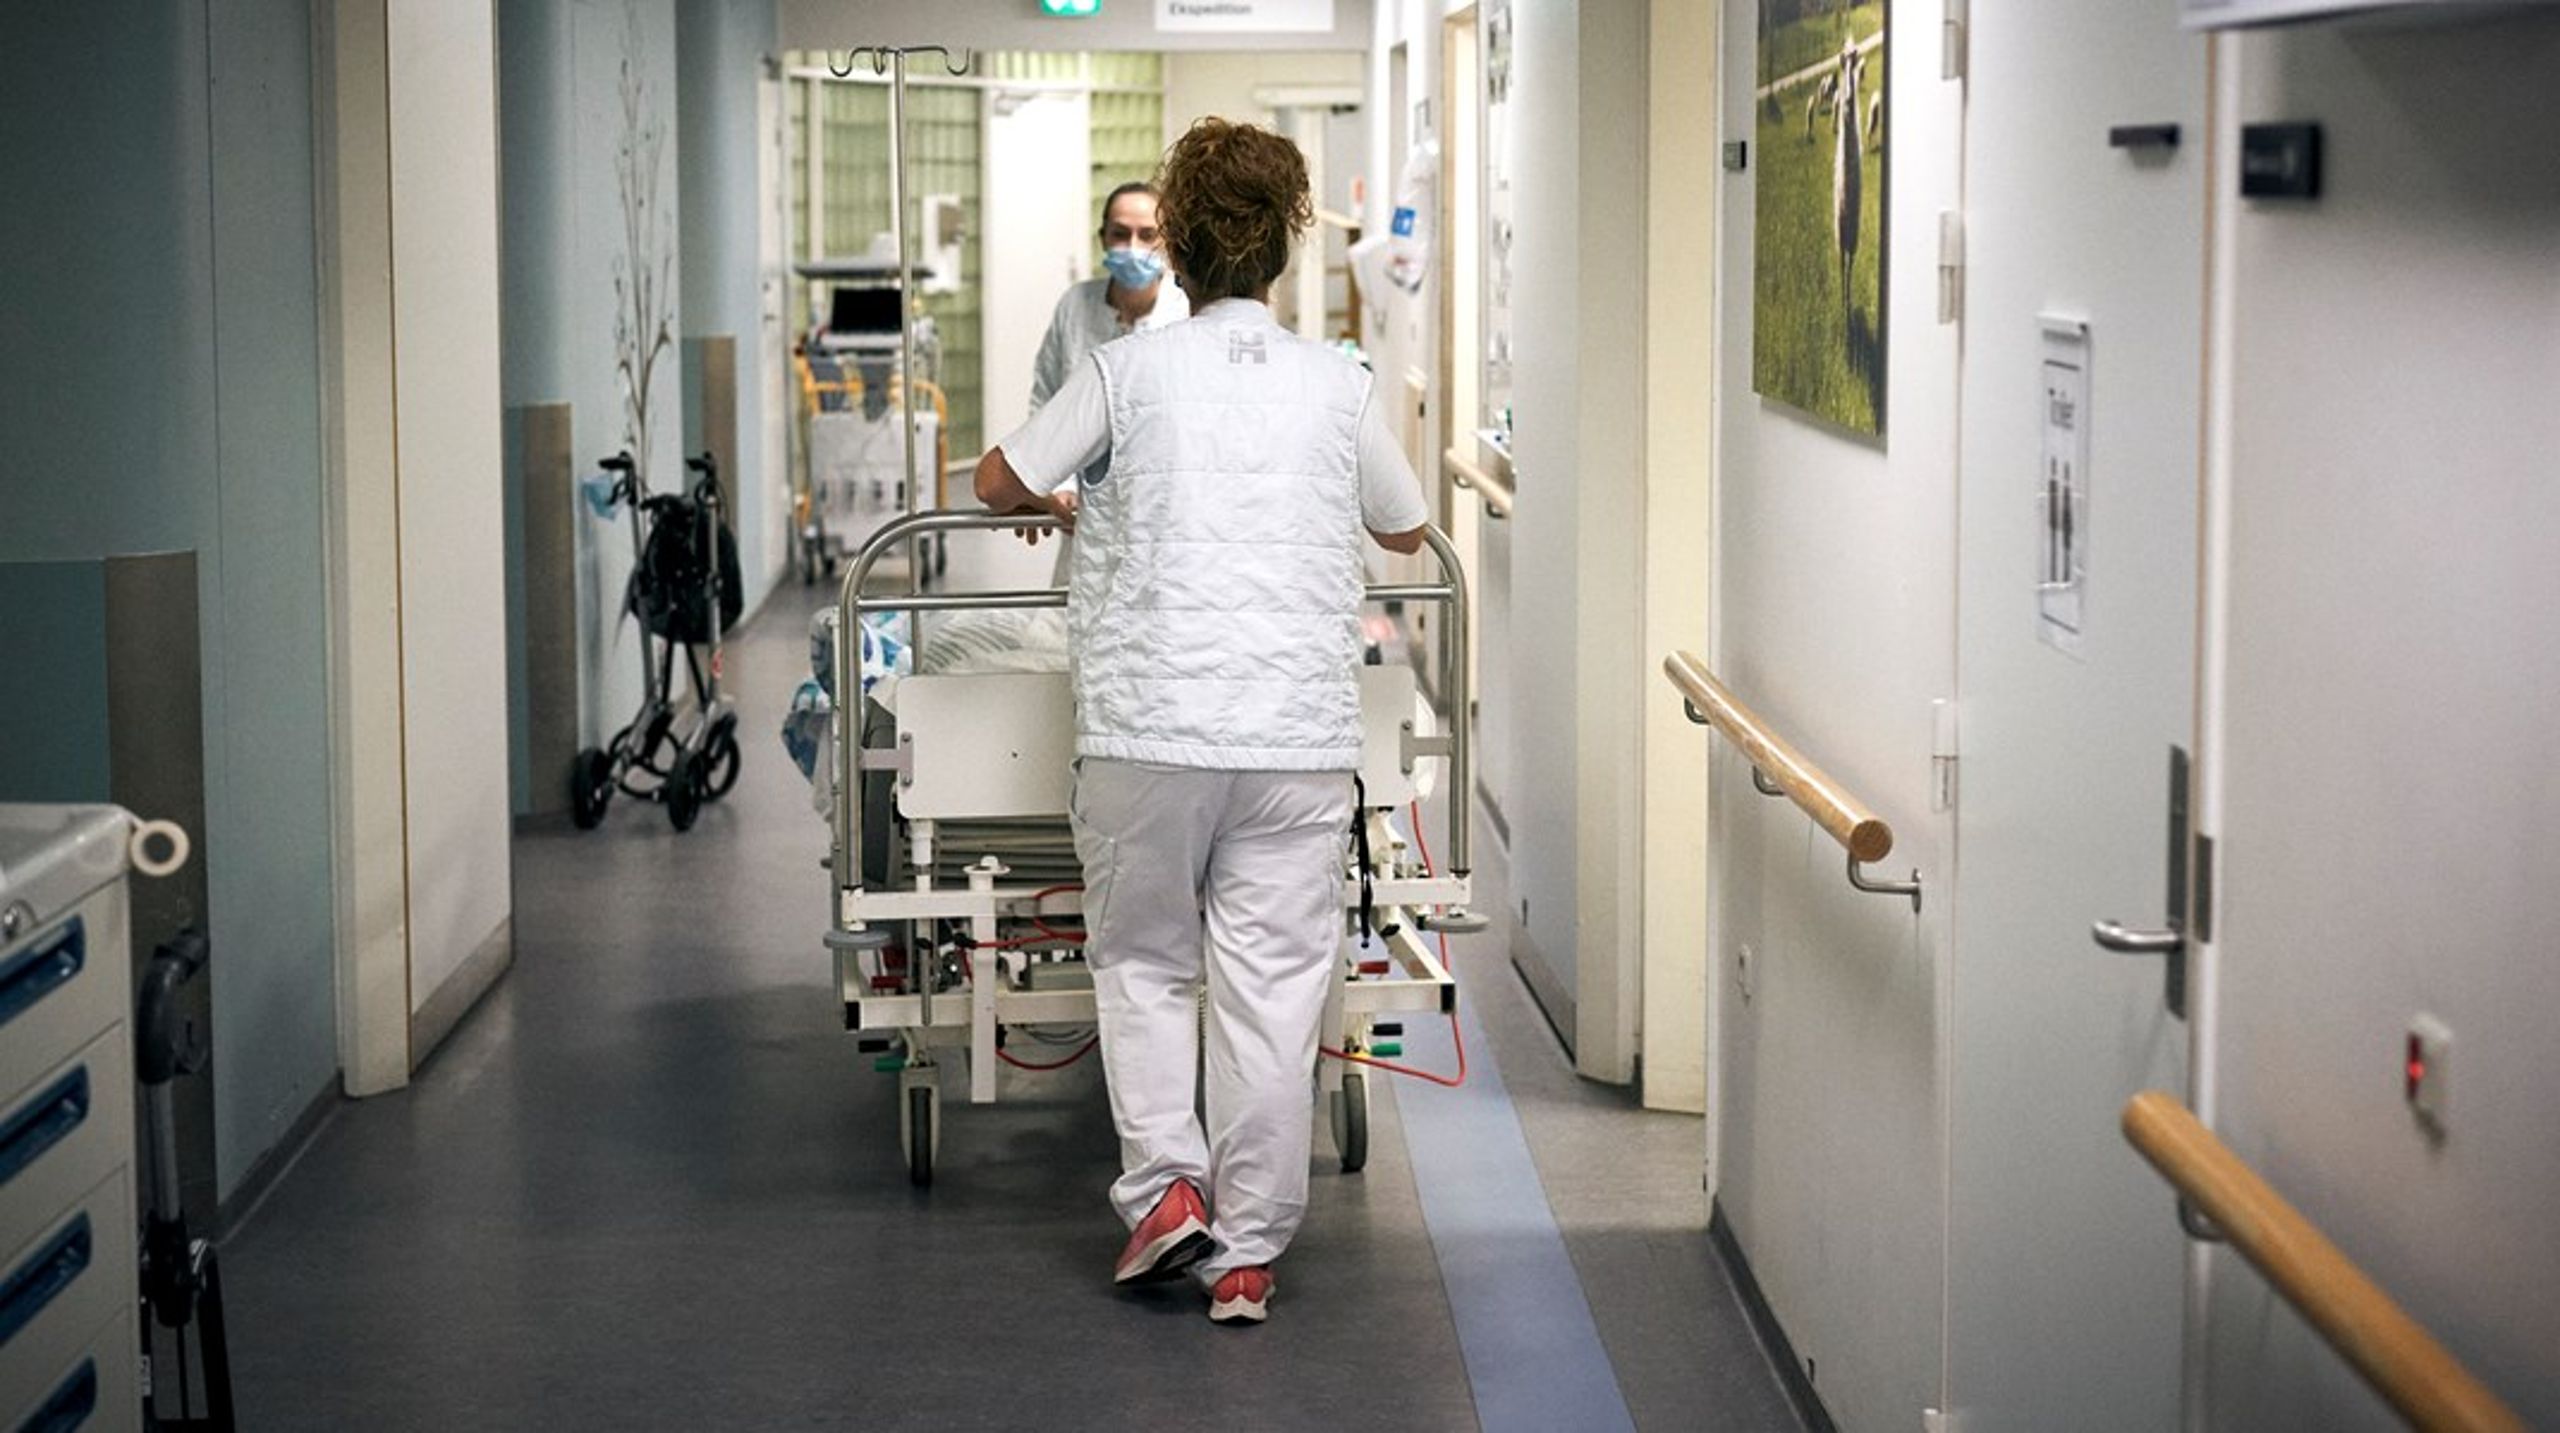 Københavns Kommune er nødt til at sørge for, at de erfarne sygeplejersker har lyst til at forblive ansatte, skriver Nicklas Vagner Forsman.